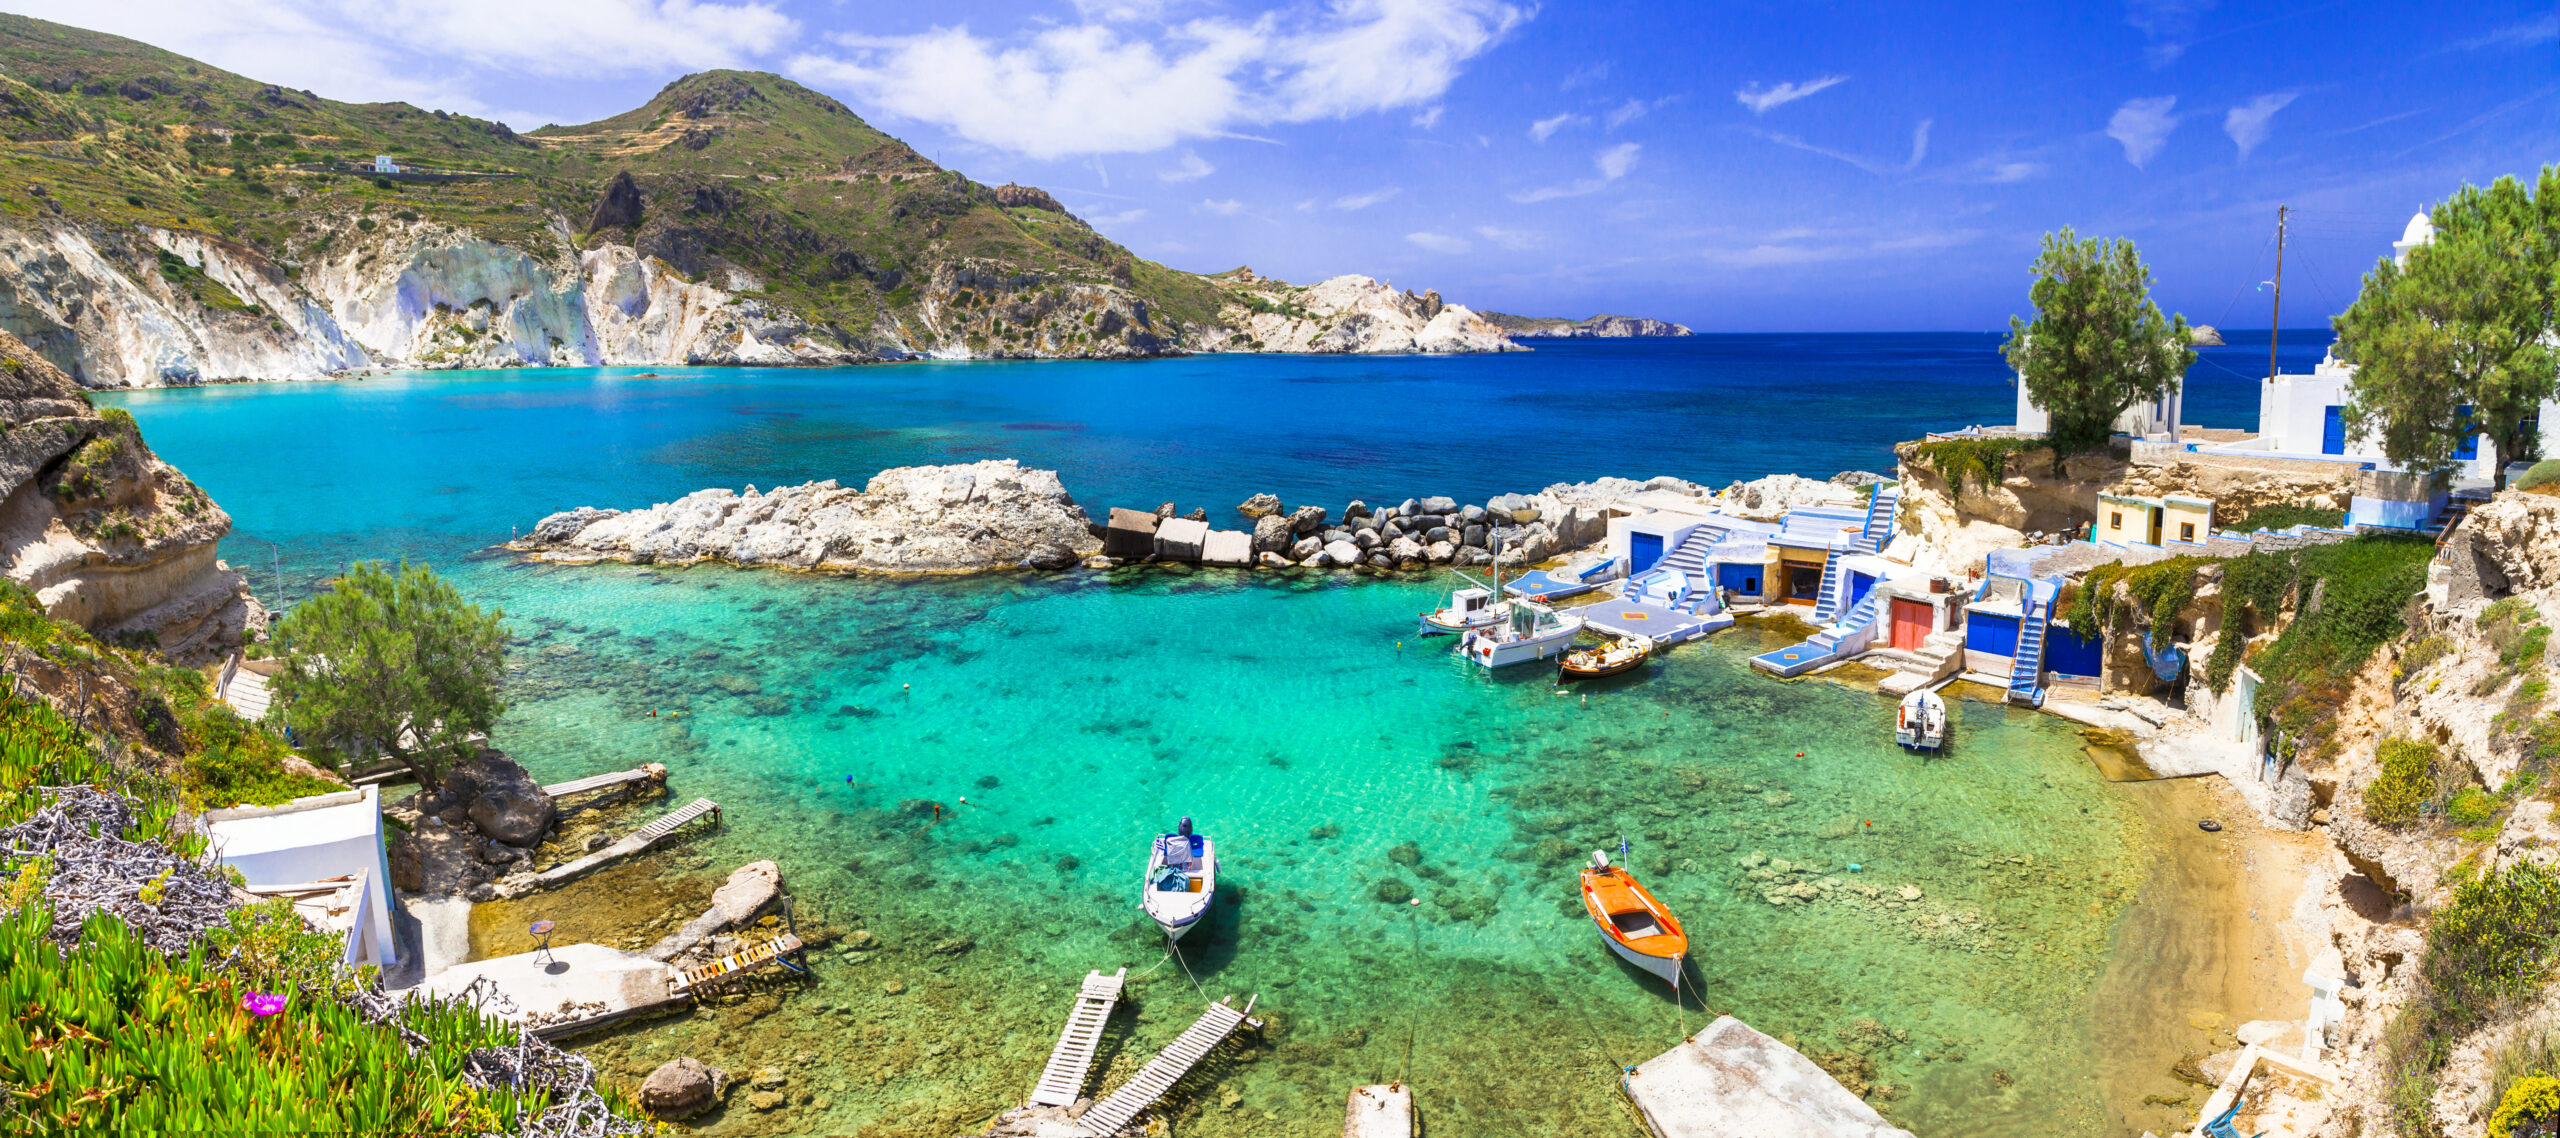 Vacanta pe Insula Milos, Grecia! – 239 euro (zbor si cazare 5 nopti)